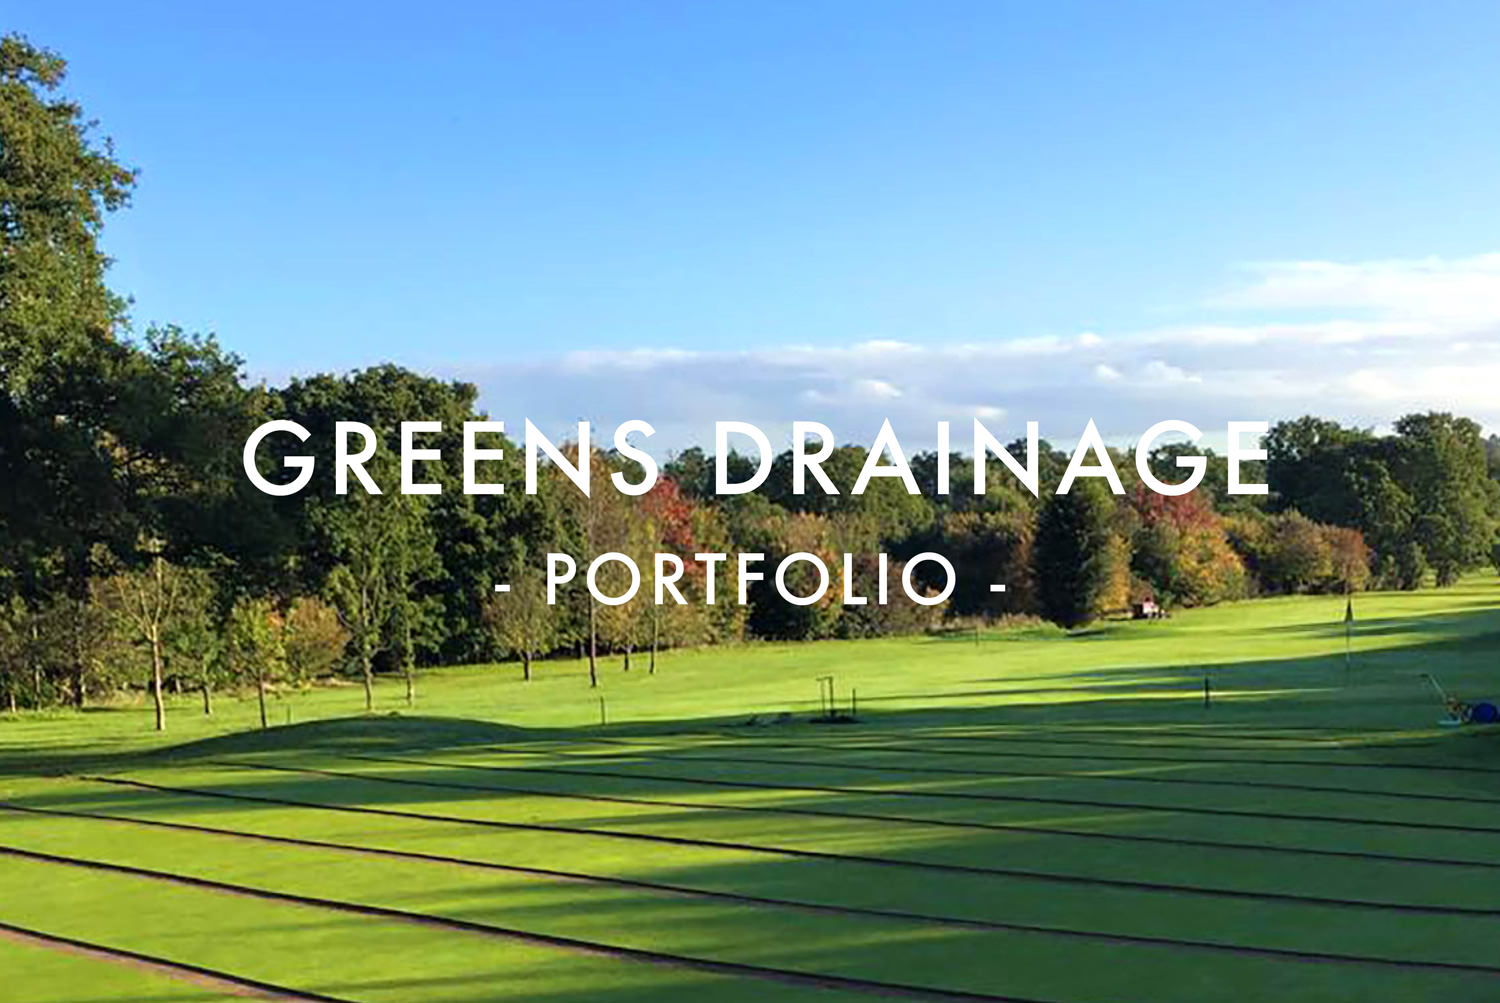 Greens Drainage Portfolio